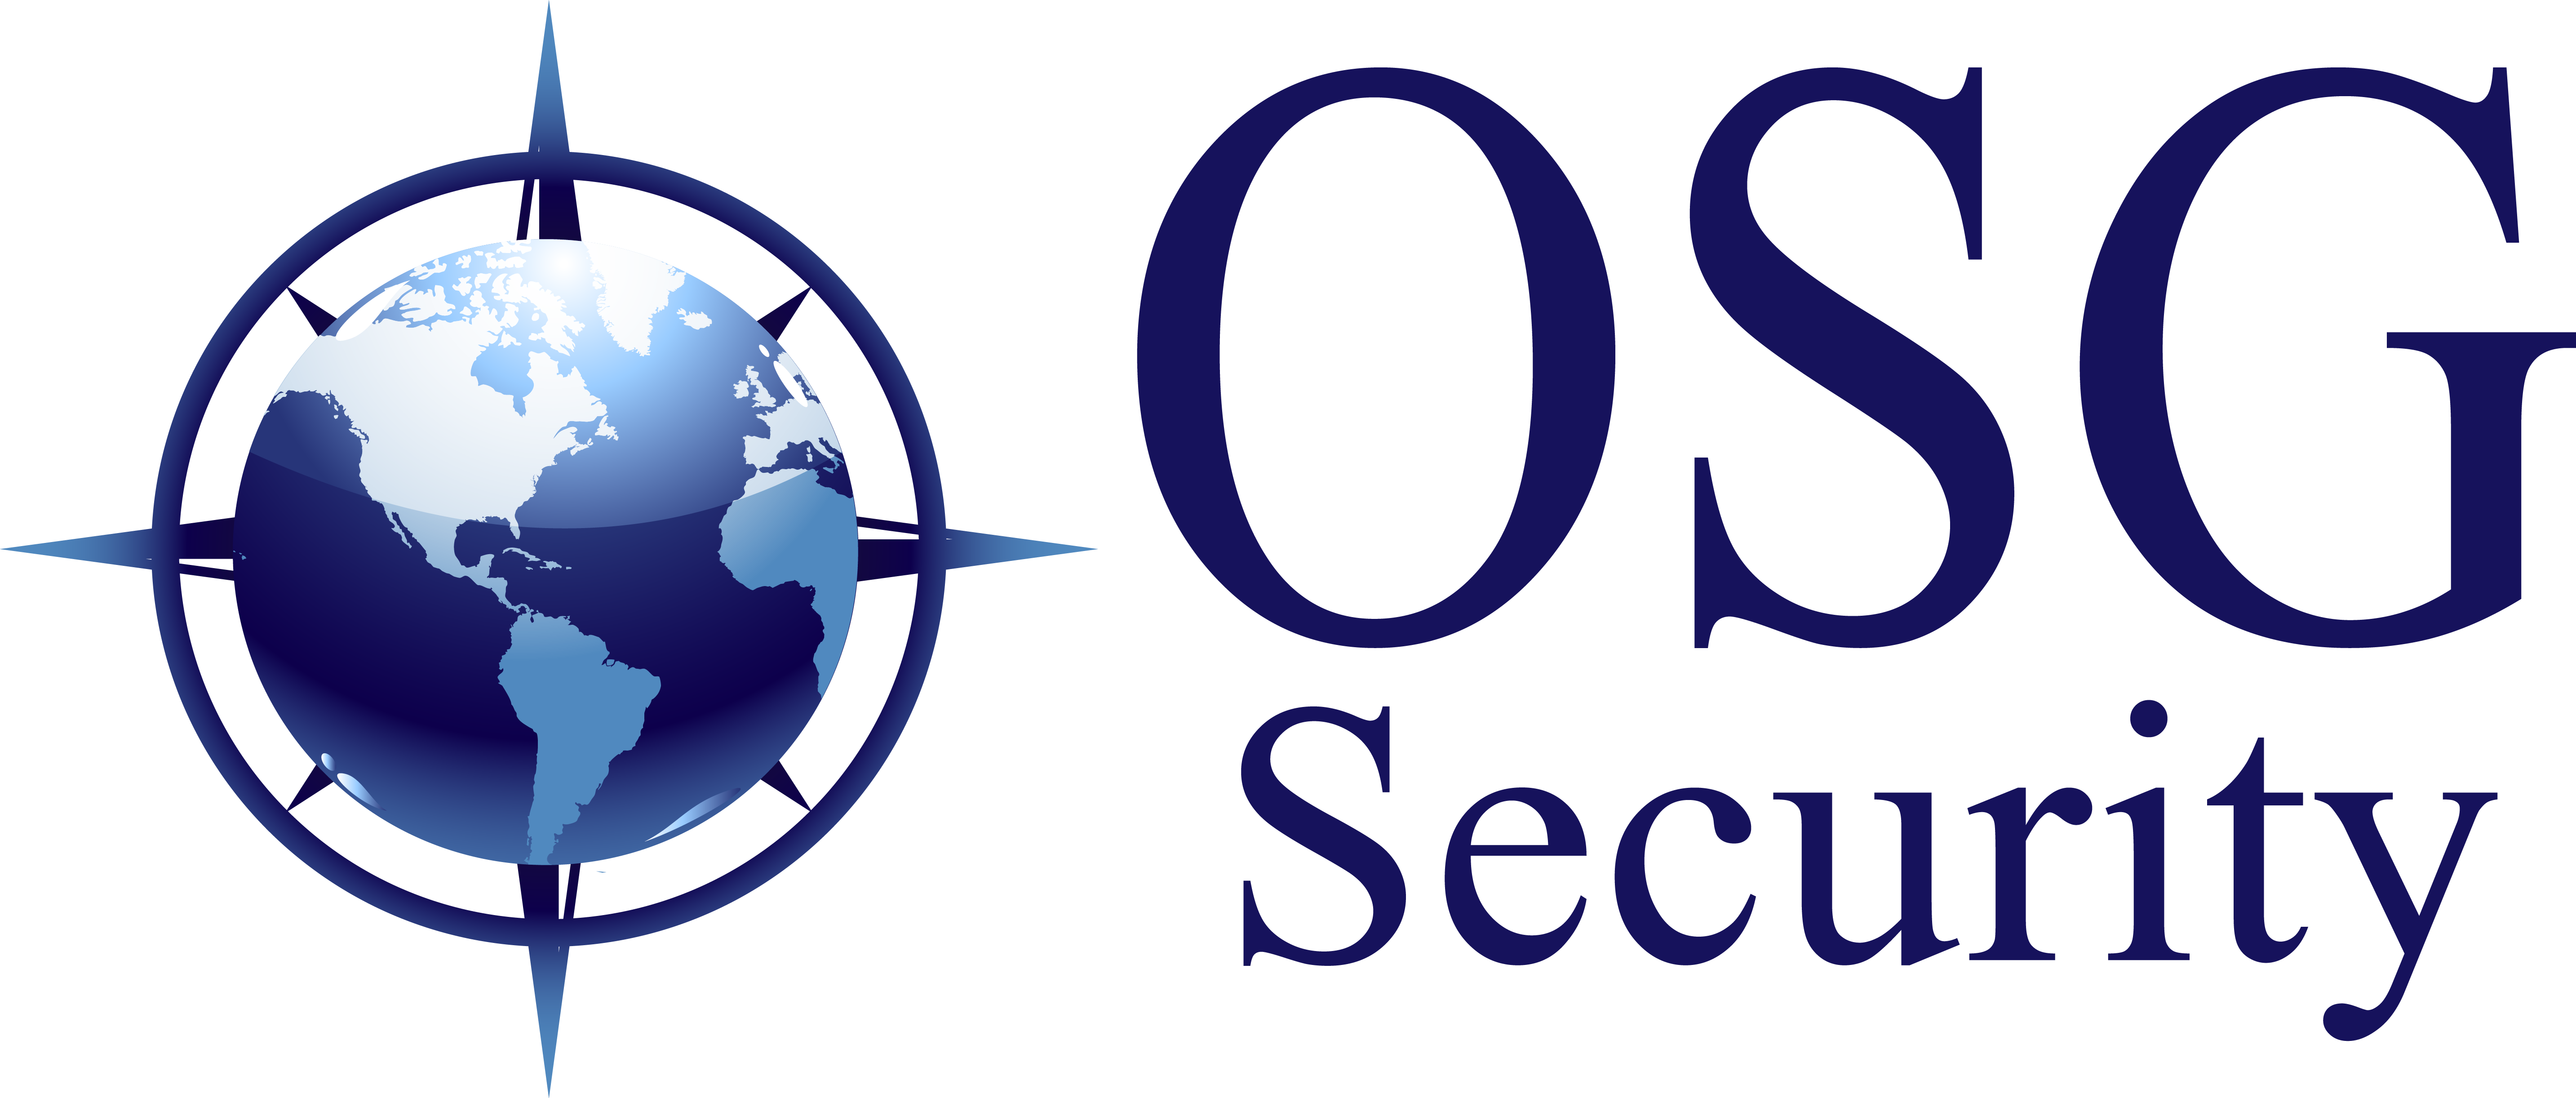 OSG Logo Vector_OSG Security